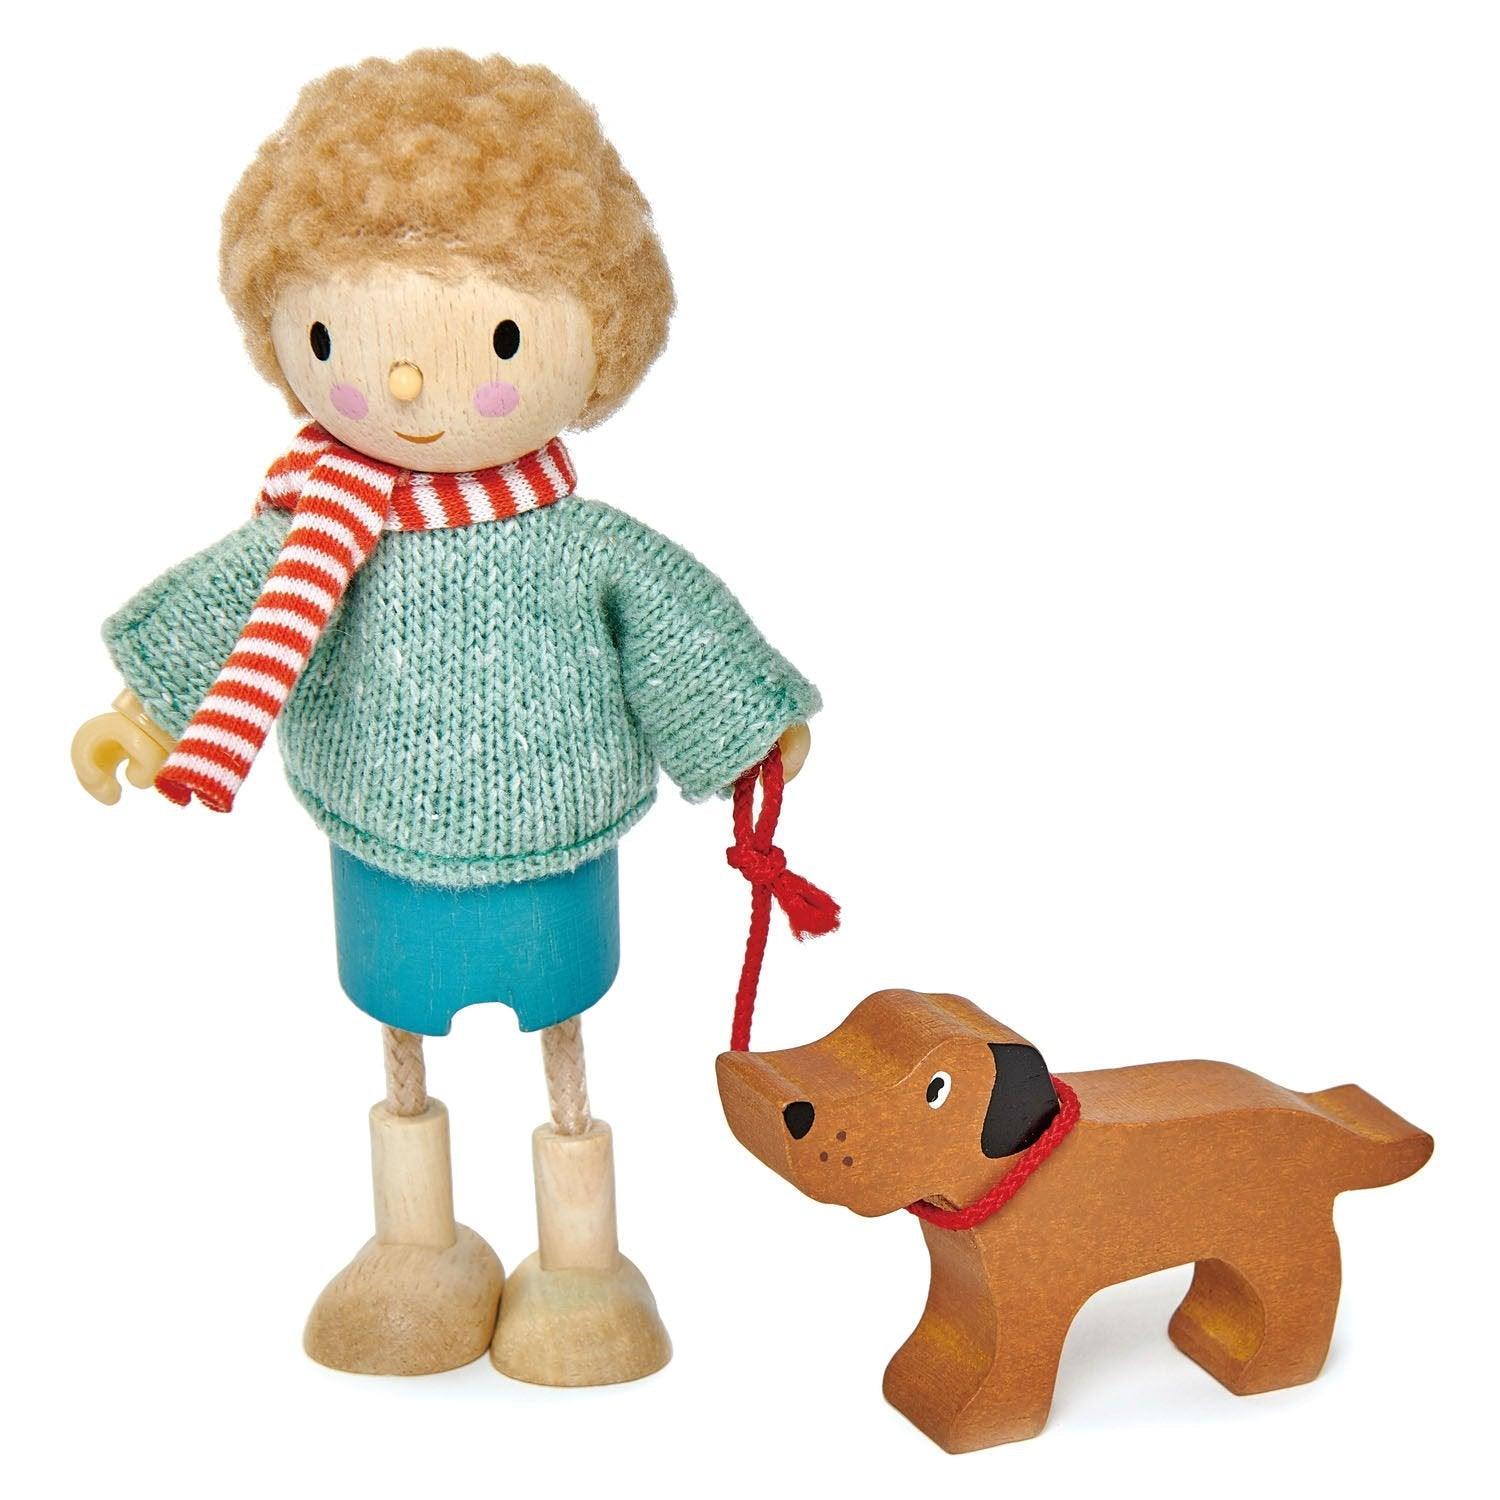 Tender Blattspielzeug: Mr. Goodwood und seine Hundeduppe